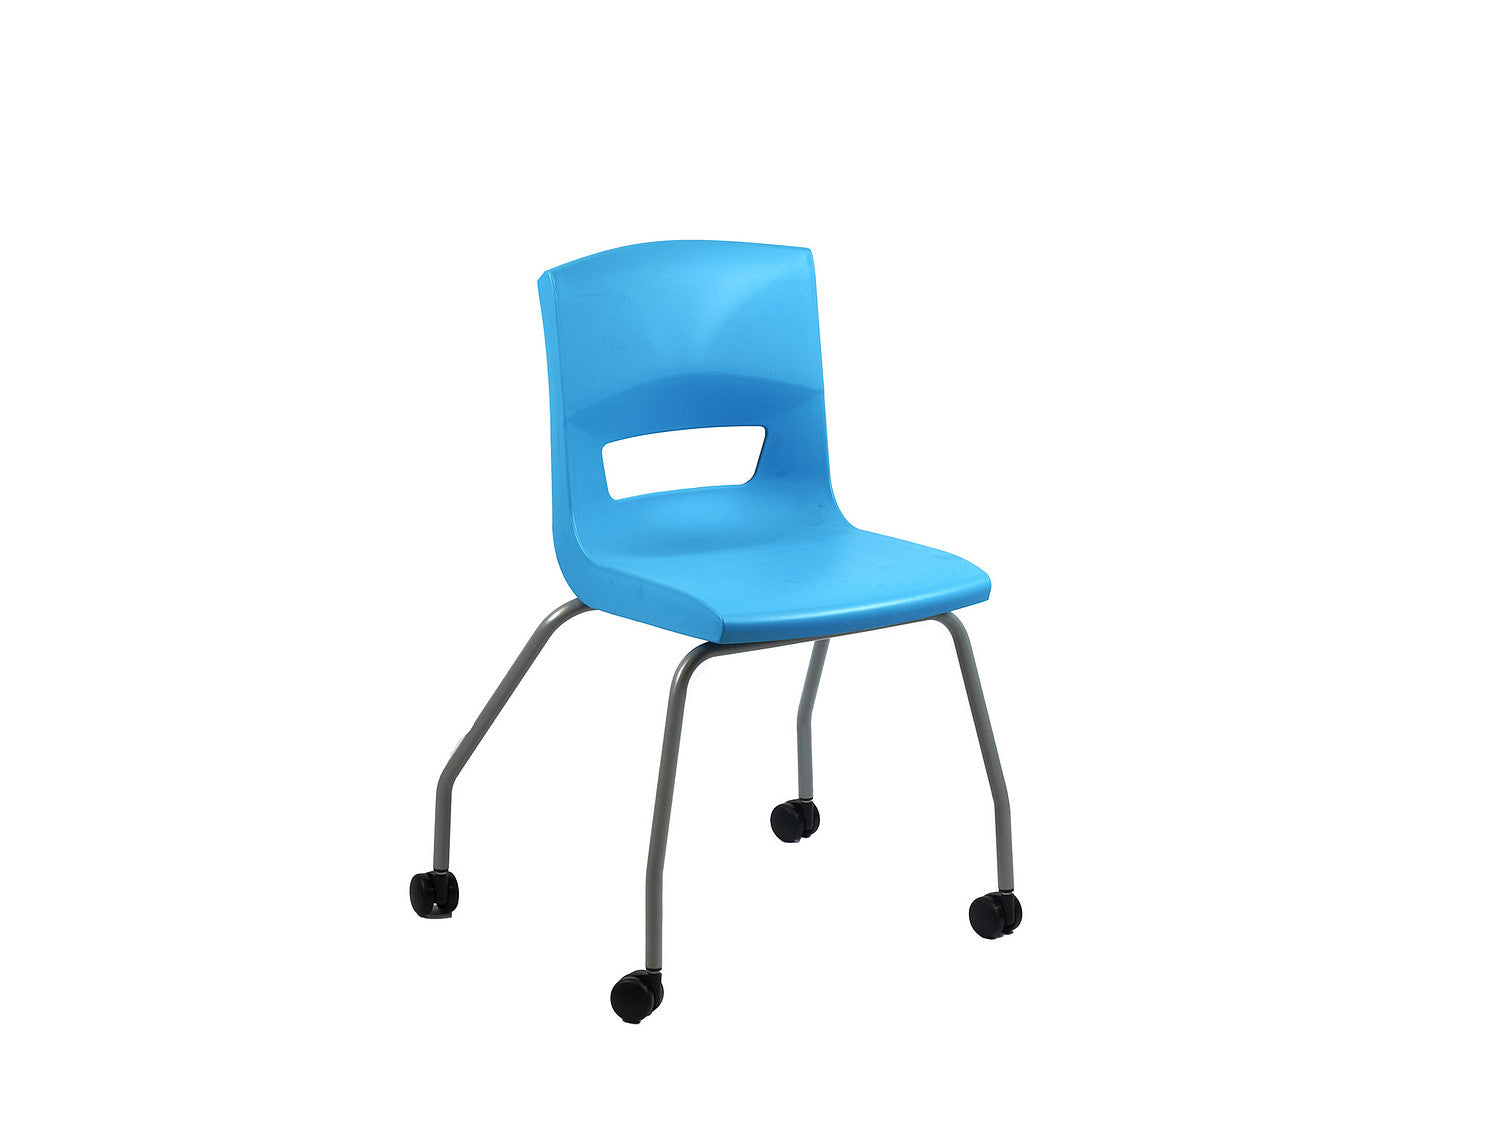 Postura 4 legs on castor unique stlye classroom chair auqa blue